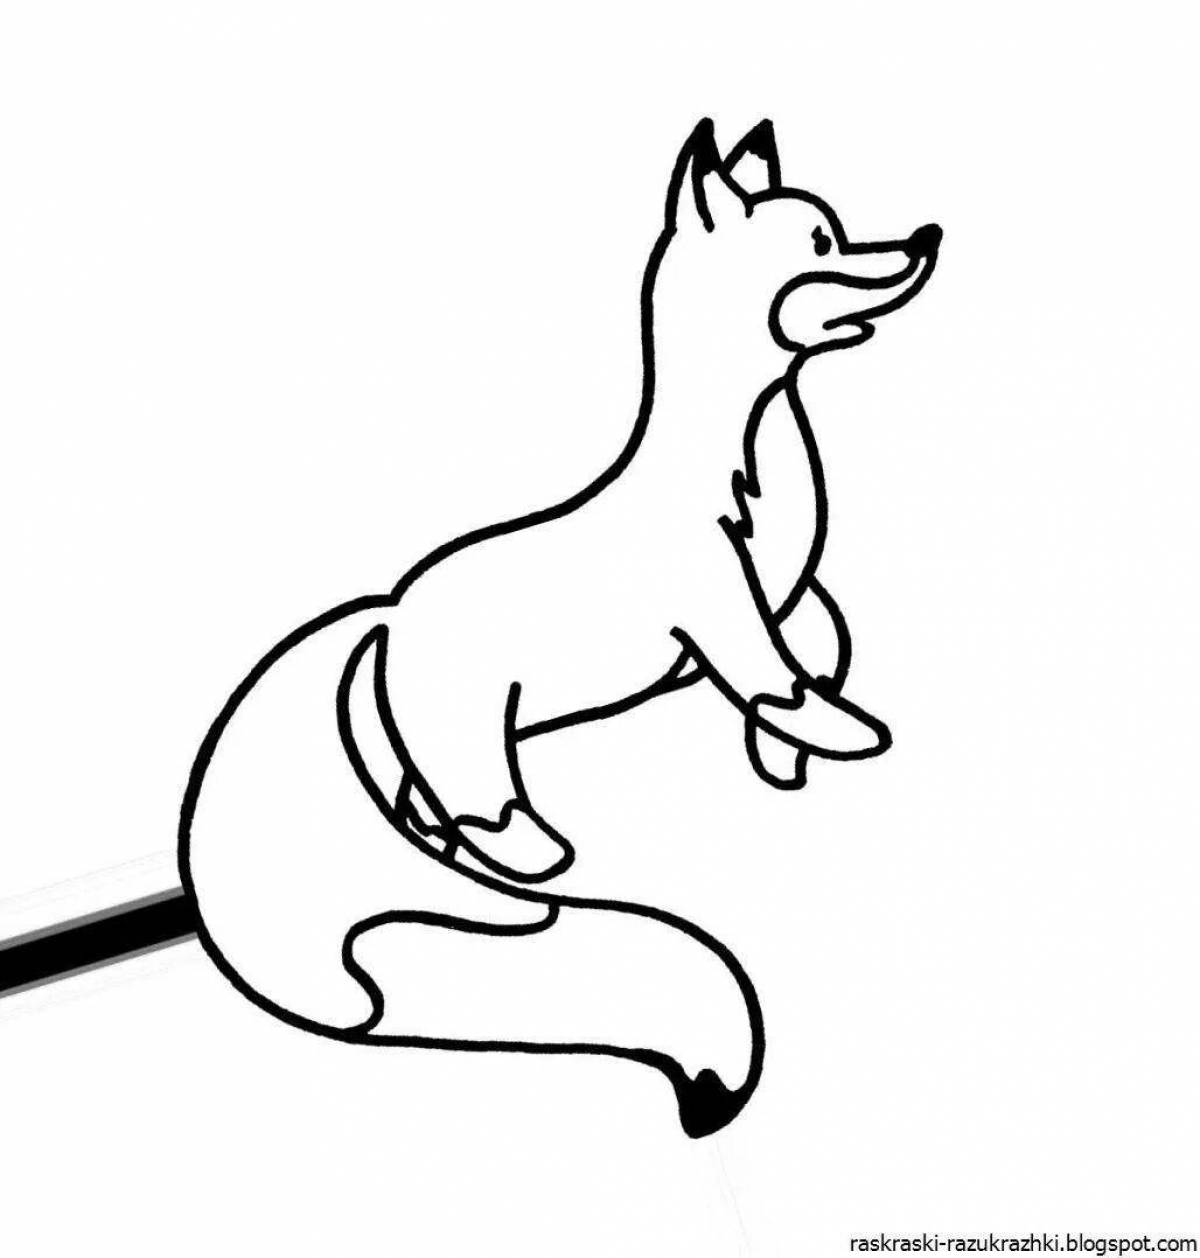 Анимированная страница раскраски сидящей лисы